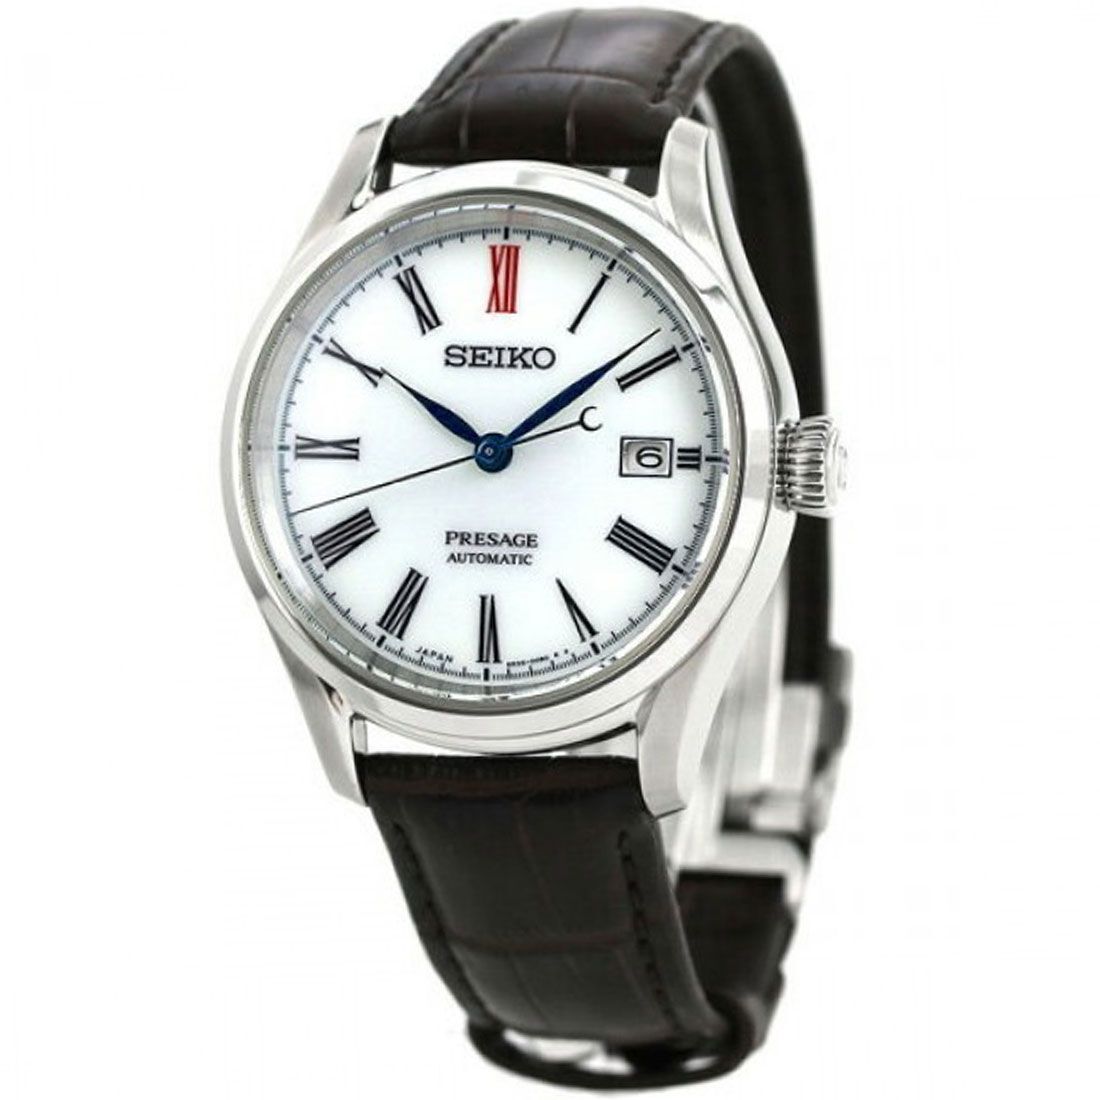 Seiko Presage Automatic Arita Porcelain JDM Watch SARX061 -Seiko